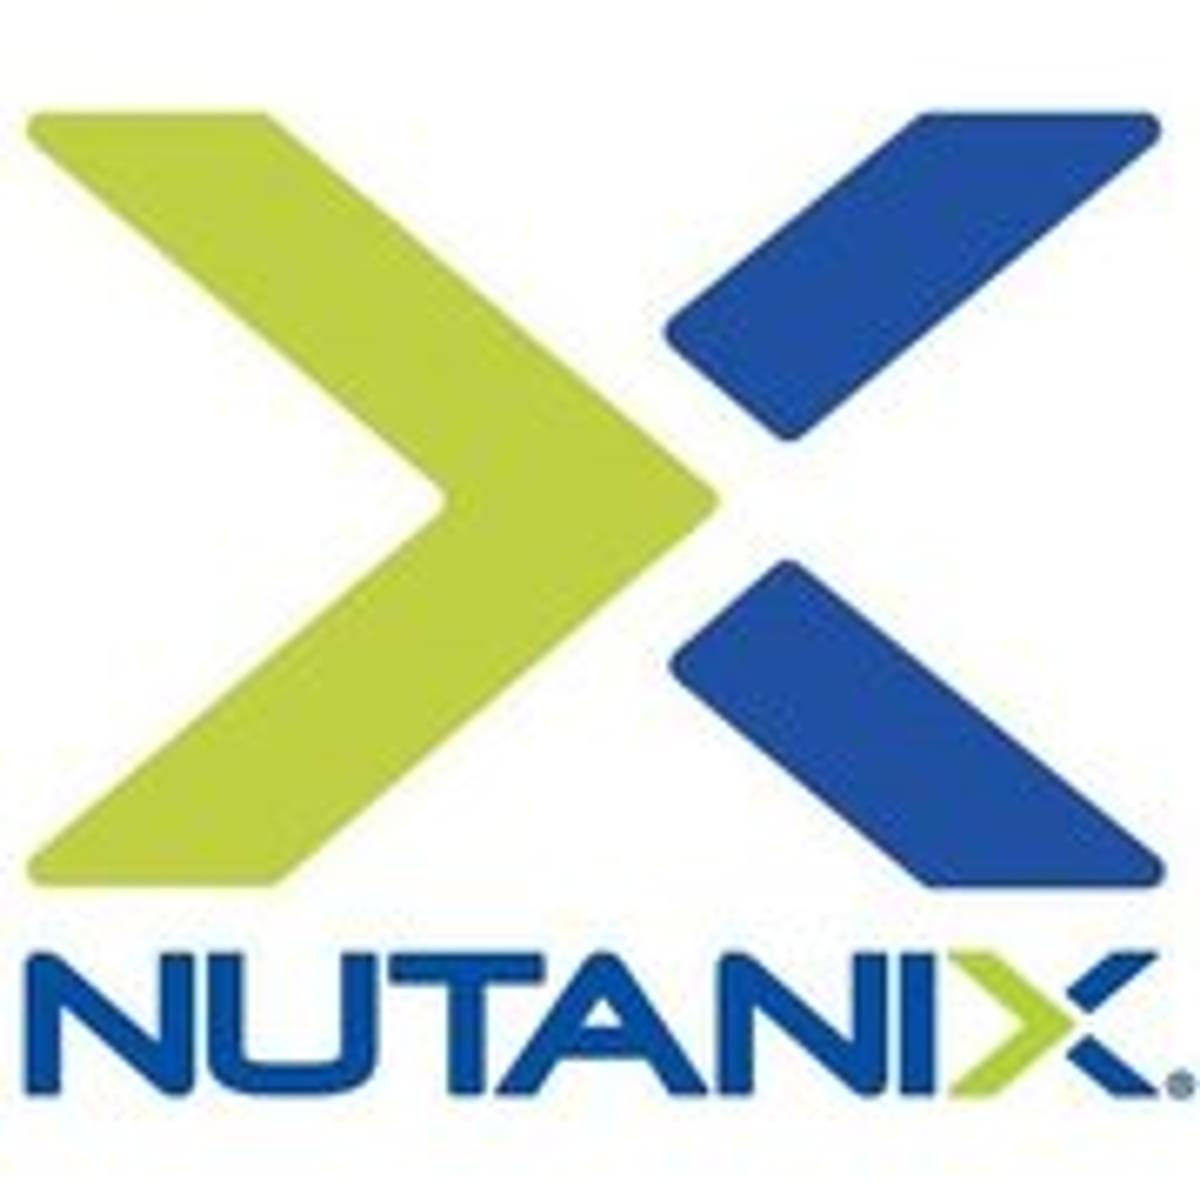 Nutanix verrijkt functies in Hyperconverged Infrastructure software en AHV hypervisor image